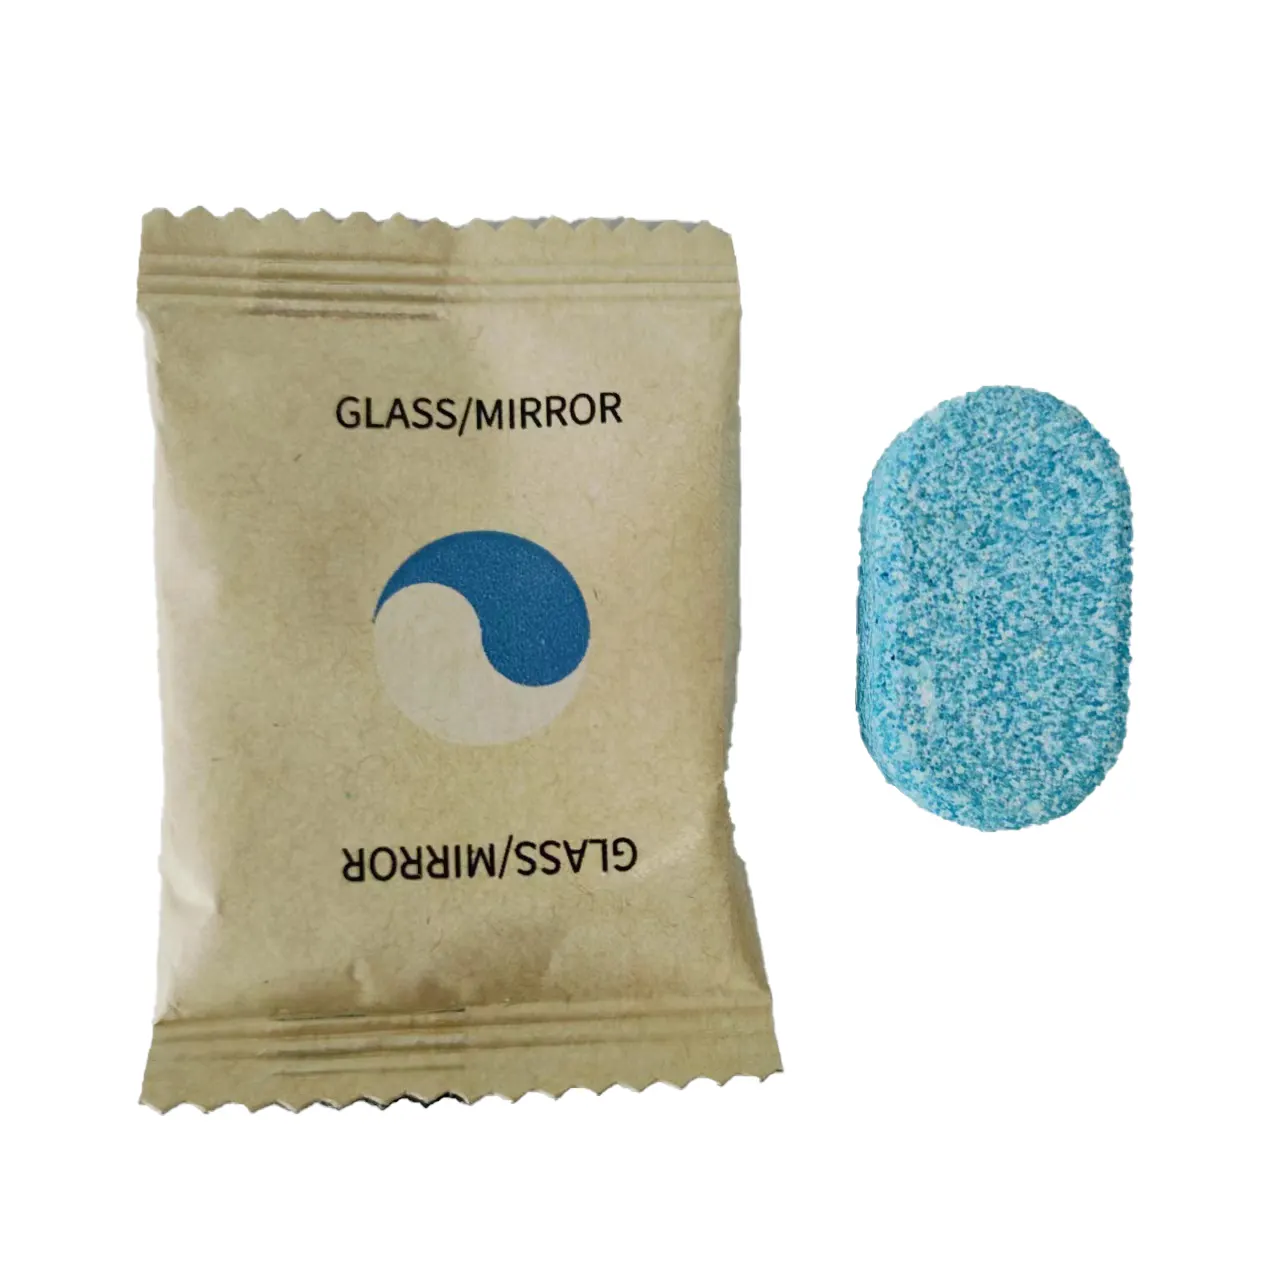 環境にやさしいピルガラスクリーナーOMEプロフェッショナルケミカルズ洗剤カスタムソリッドMSDSグラスガラスウォッシャータブレット